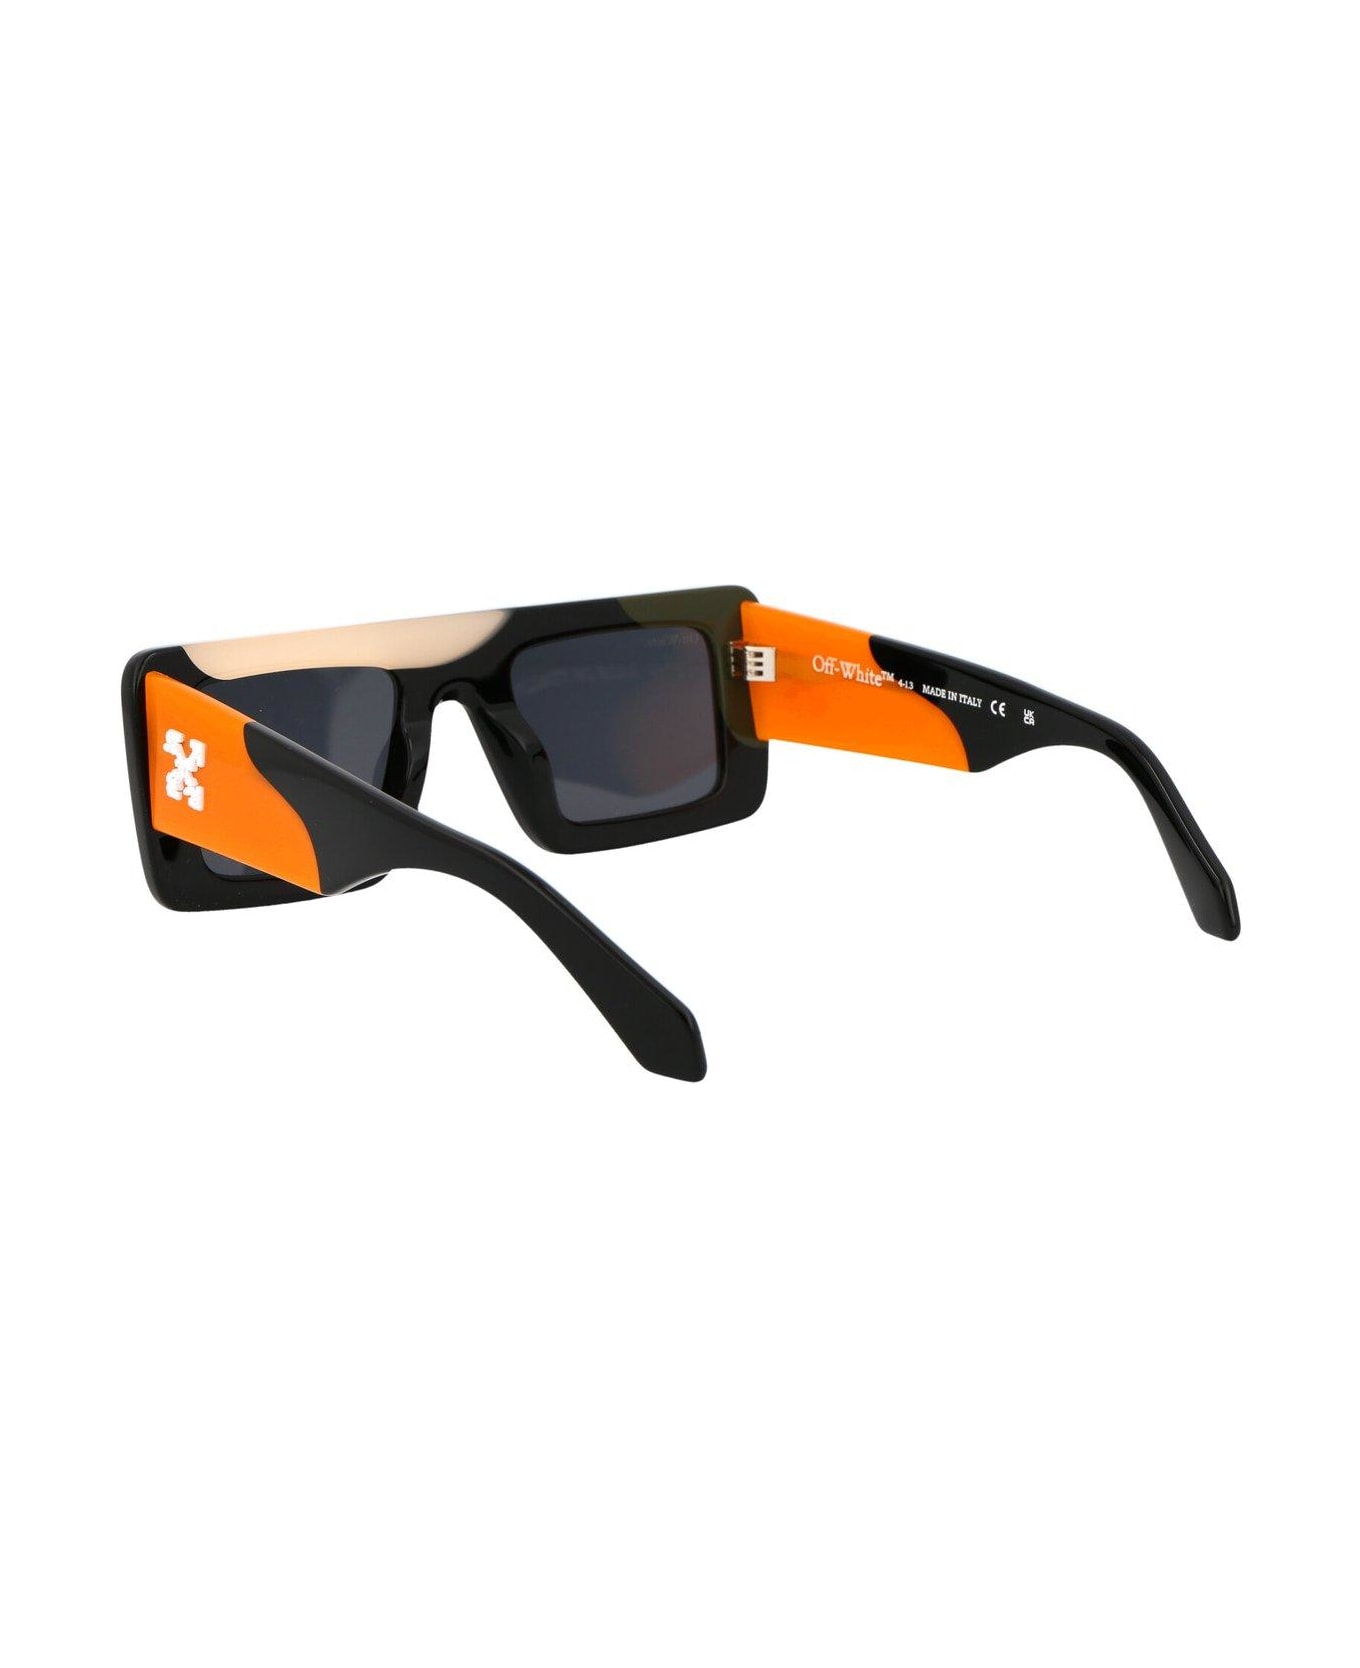 Off-White Seattle Sunglasses - 1207 MULTICOLOR